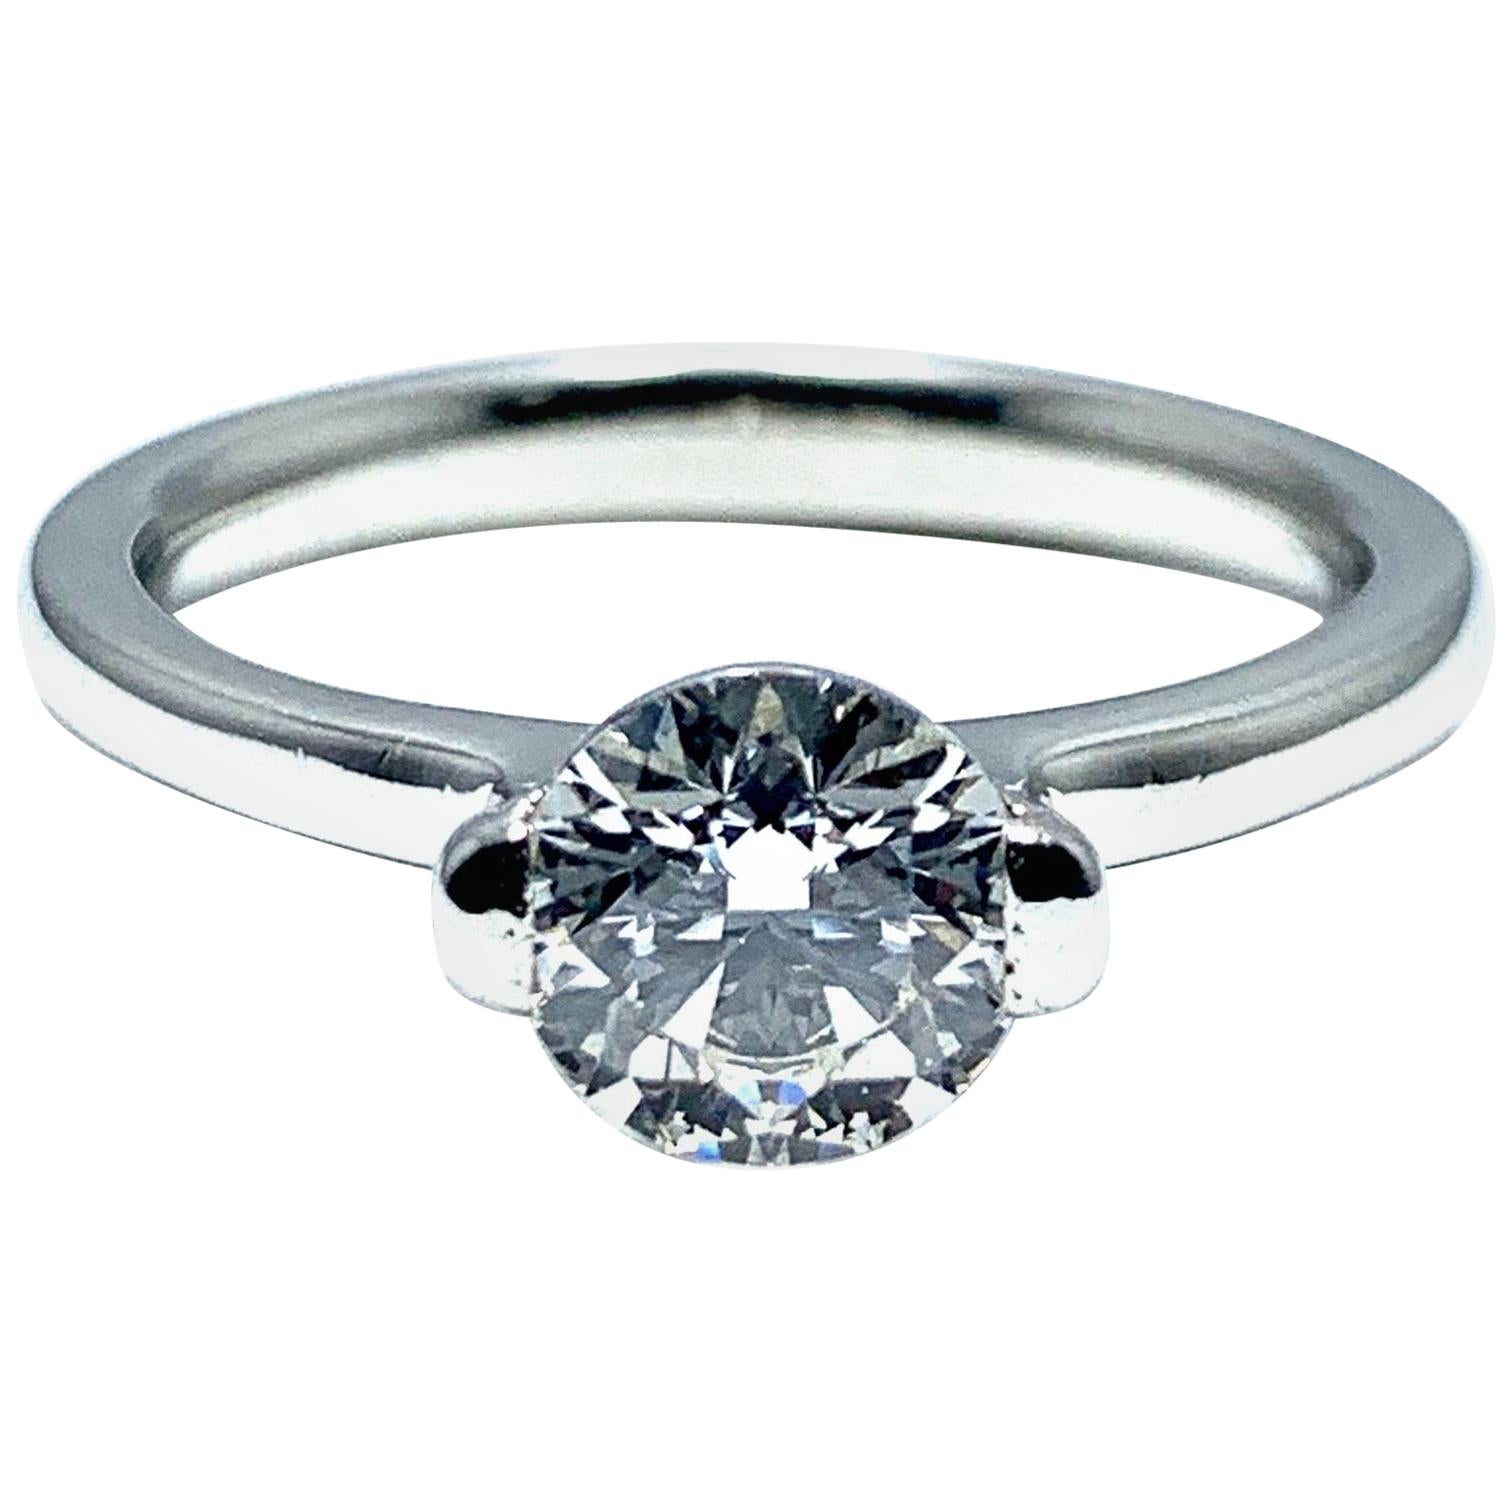 Ideal Cut Round Brilliant 0.84 Carat Diamond Solitaire Platinum Engagement Ring